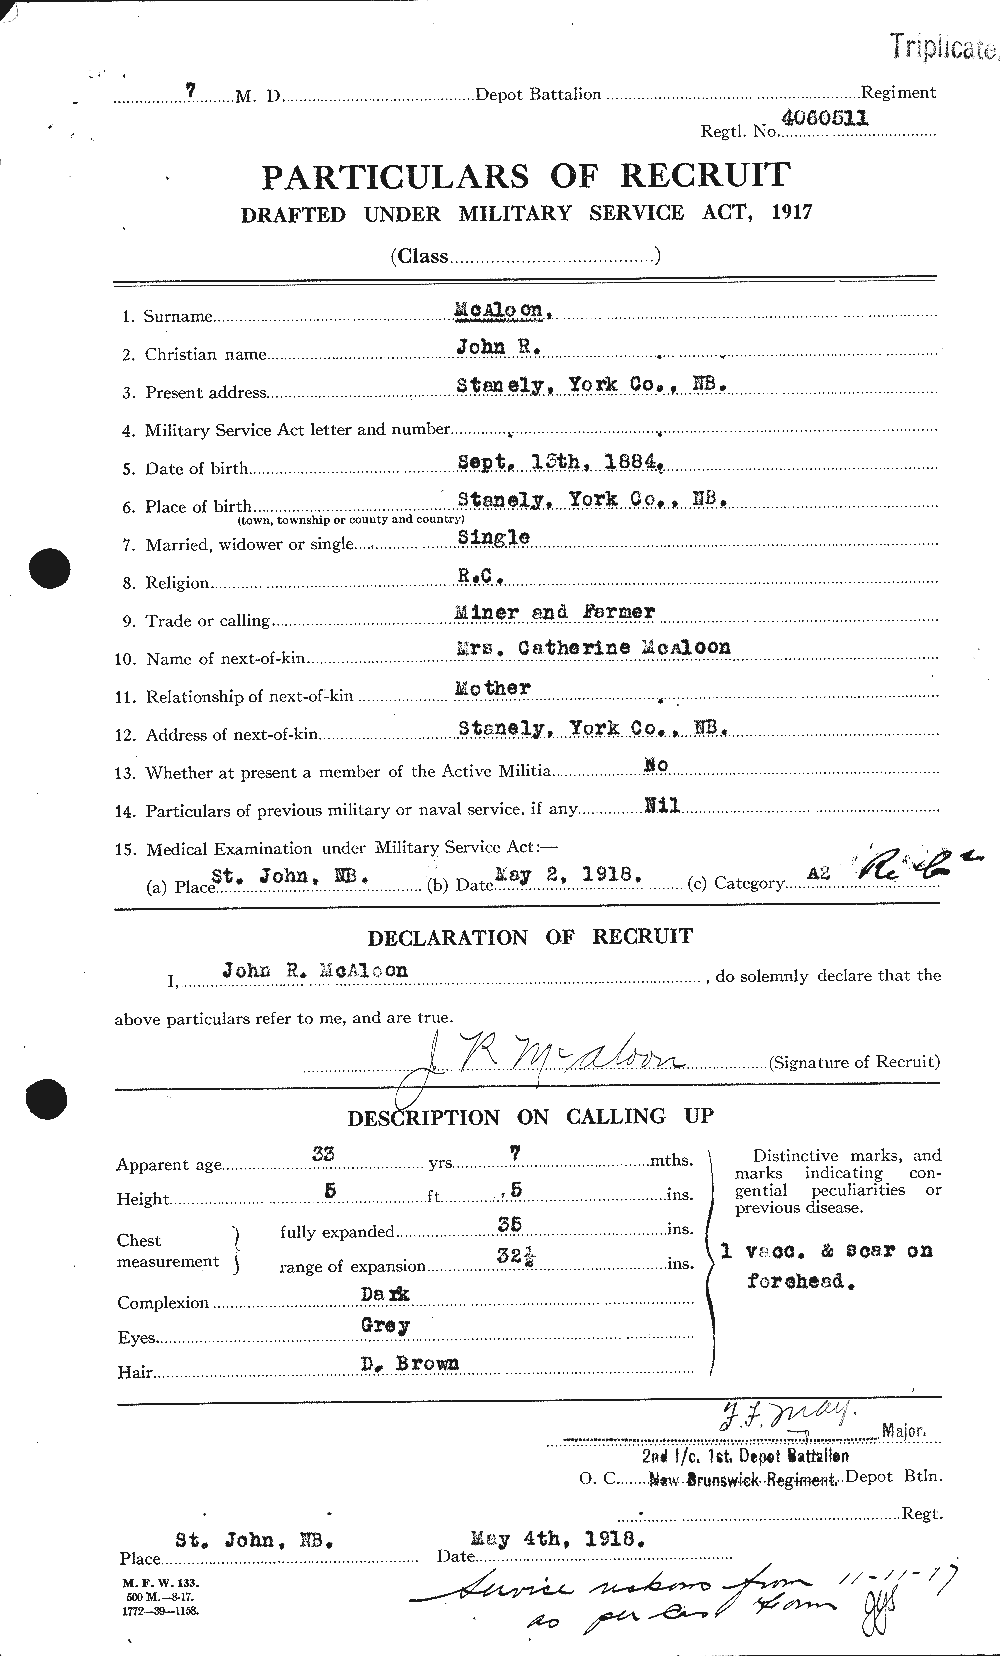 Dossiers du Personnel de la Première Guerre mondiale - CEC 516050a